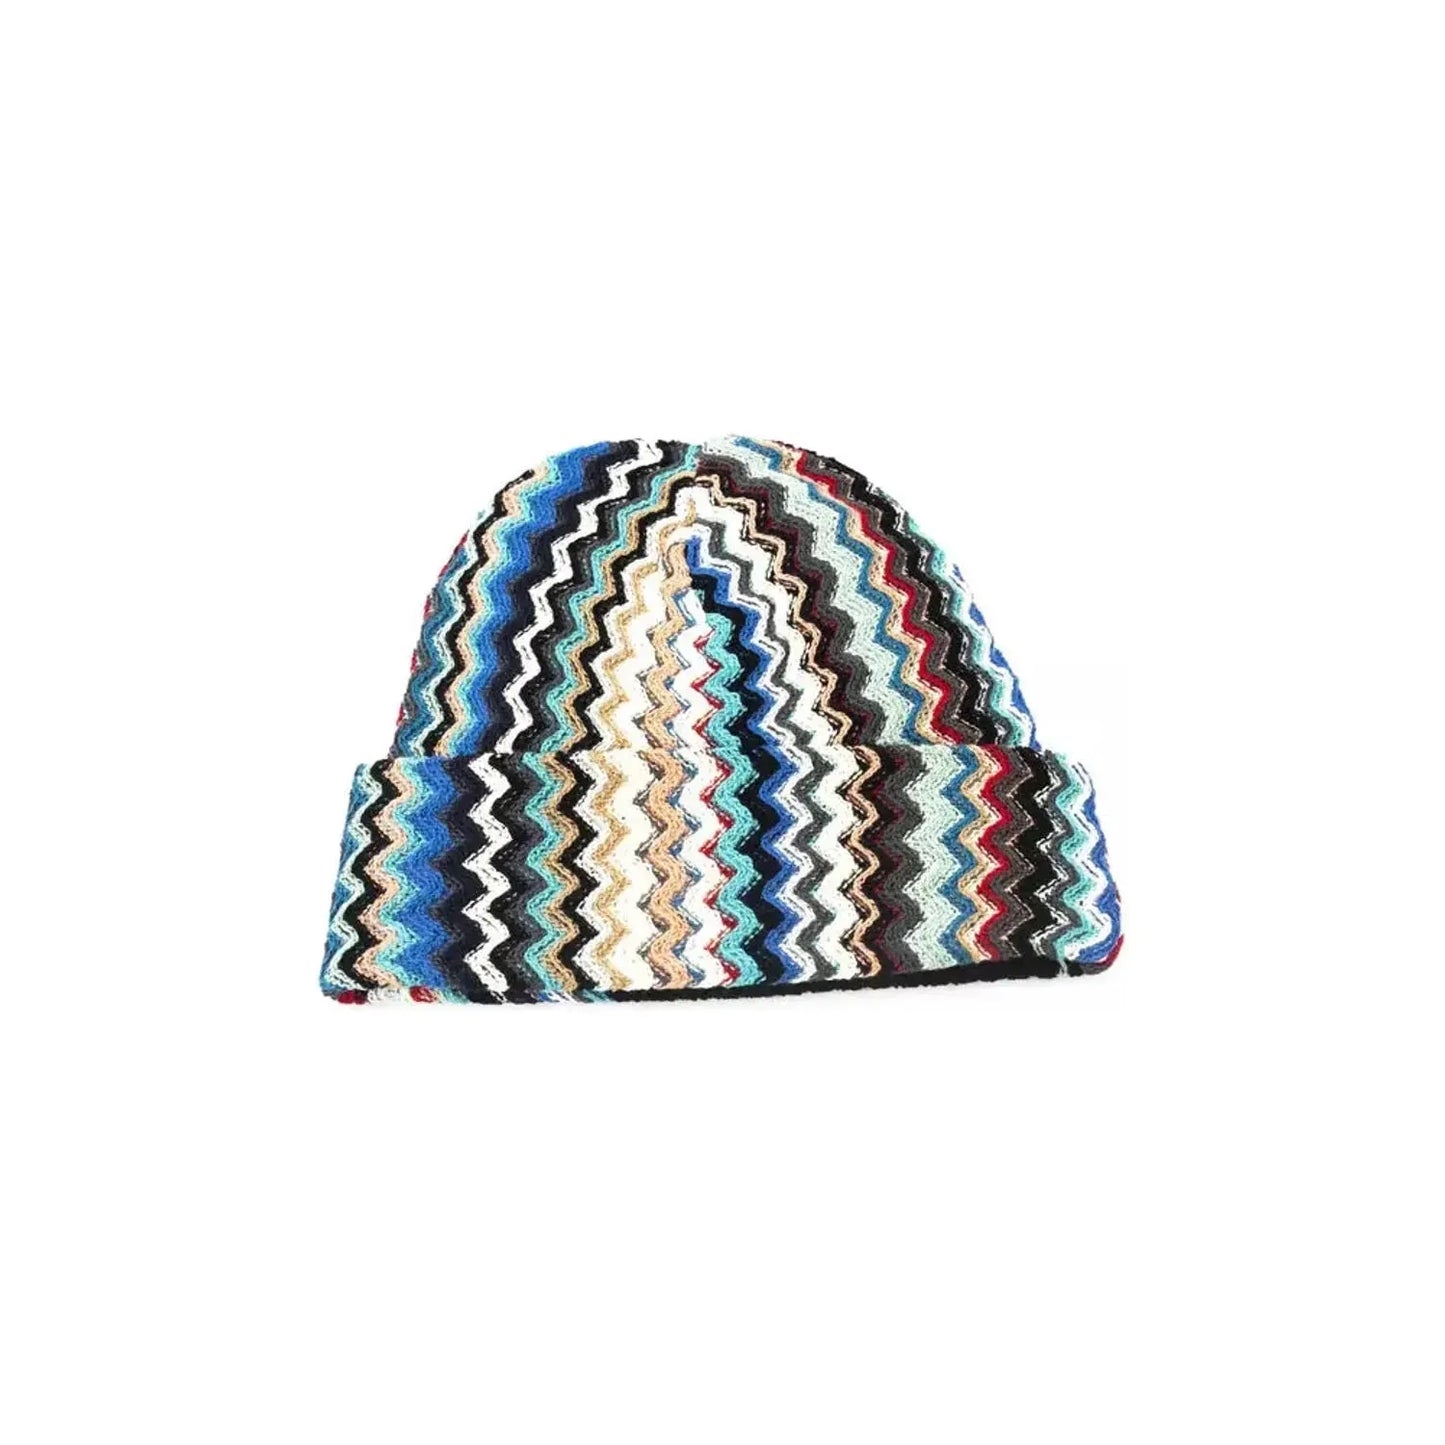 Missoni Geometric Fantasy Multicolor Wool Blend Hat multicolor-wool-hats-cap product-22438-259682997-31-44e4c632-45e.webp